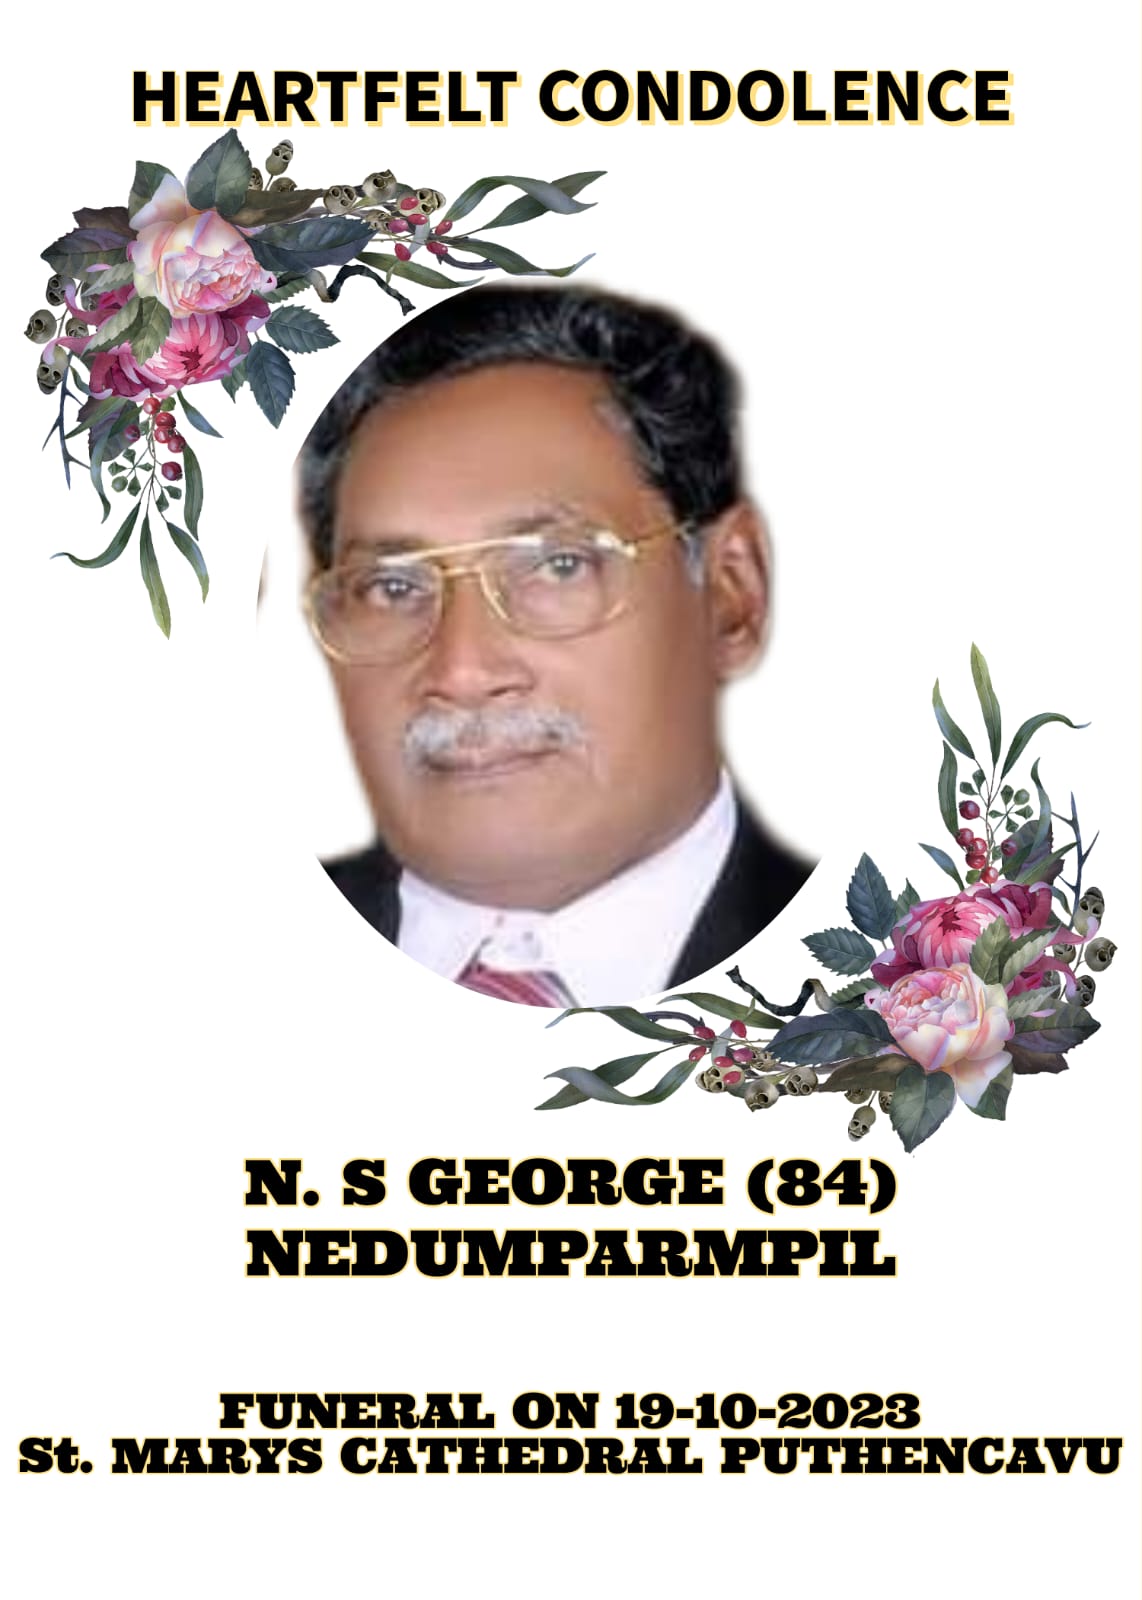 OBITUARY: N.S.GEORGE -84 years